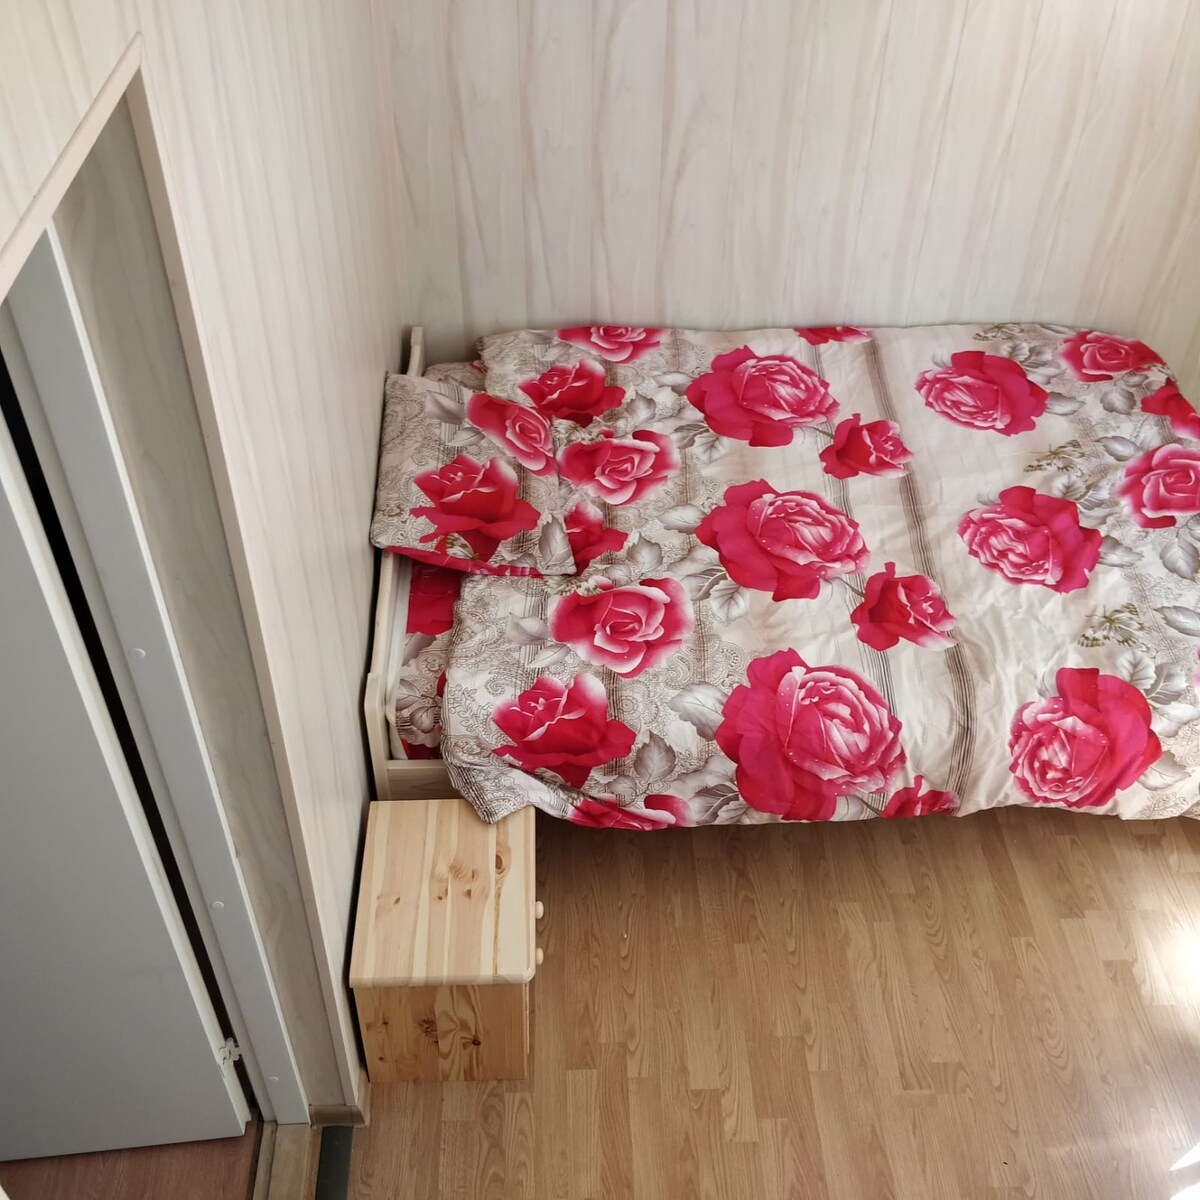 One room in Viljandi 
Kanepi accommodation